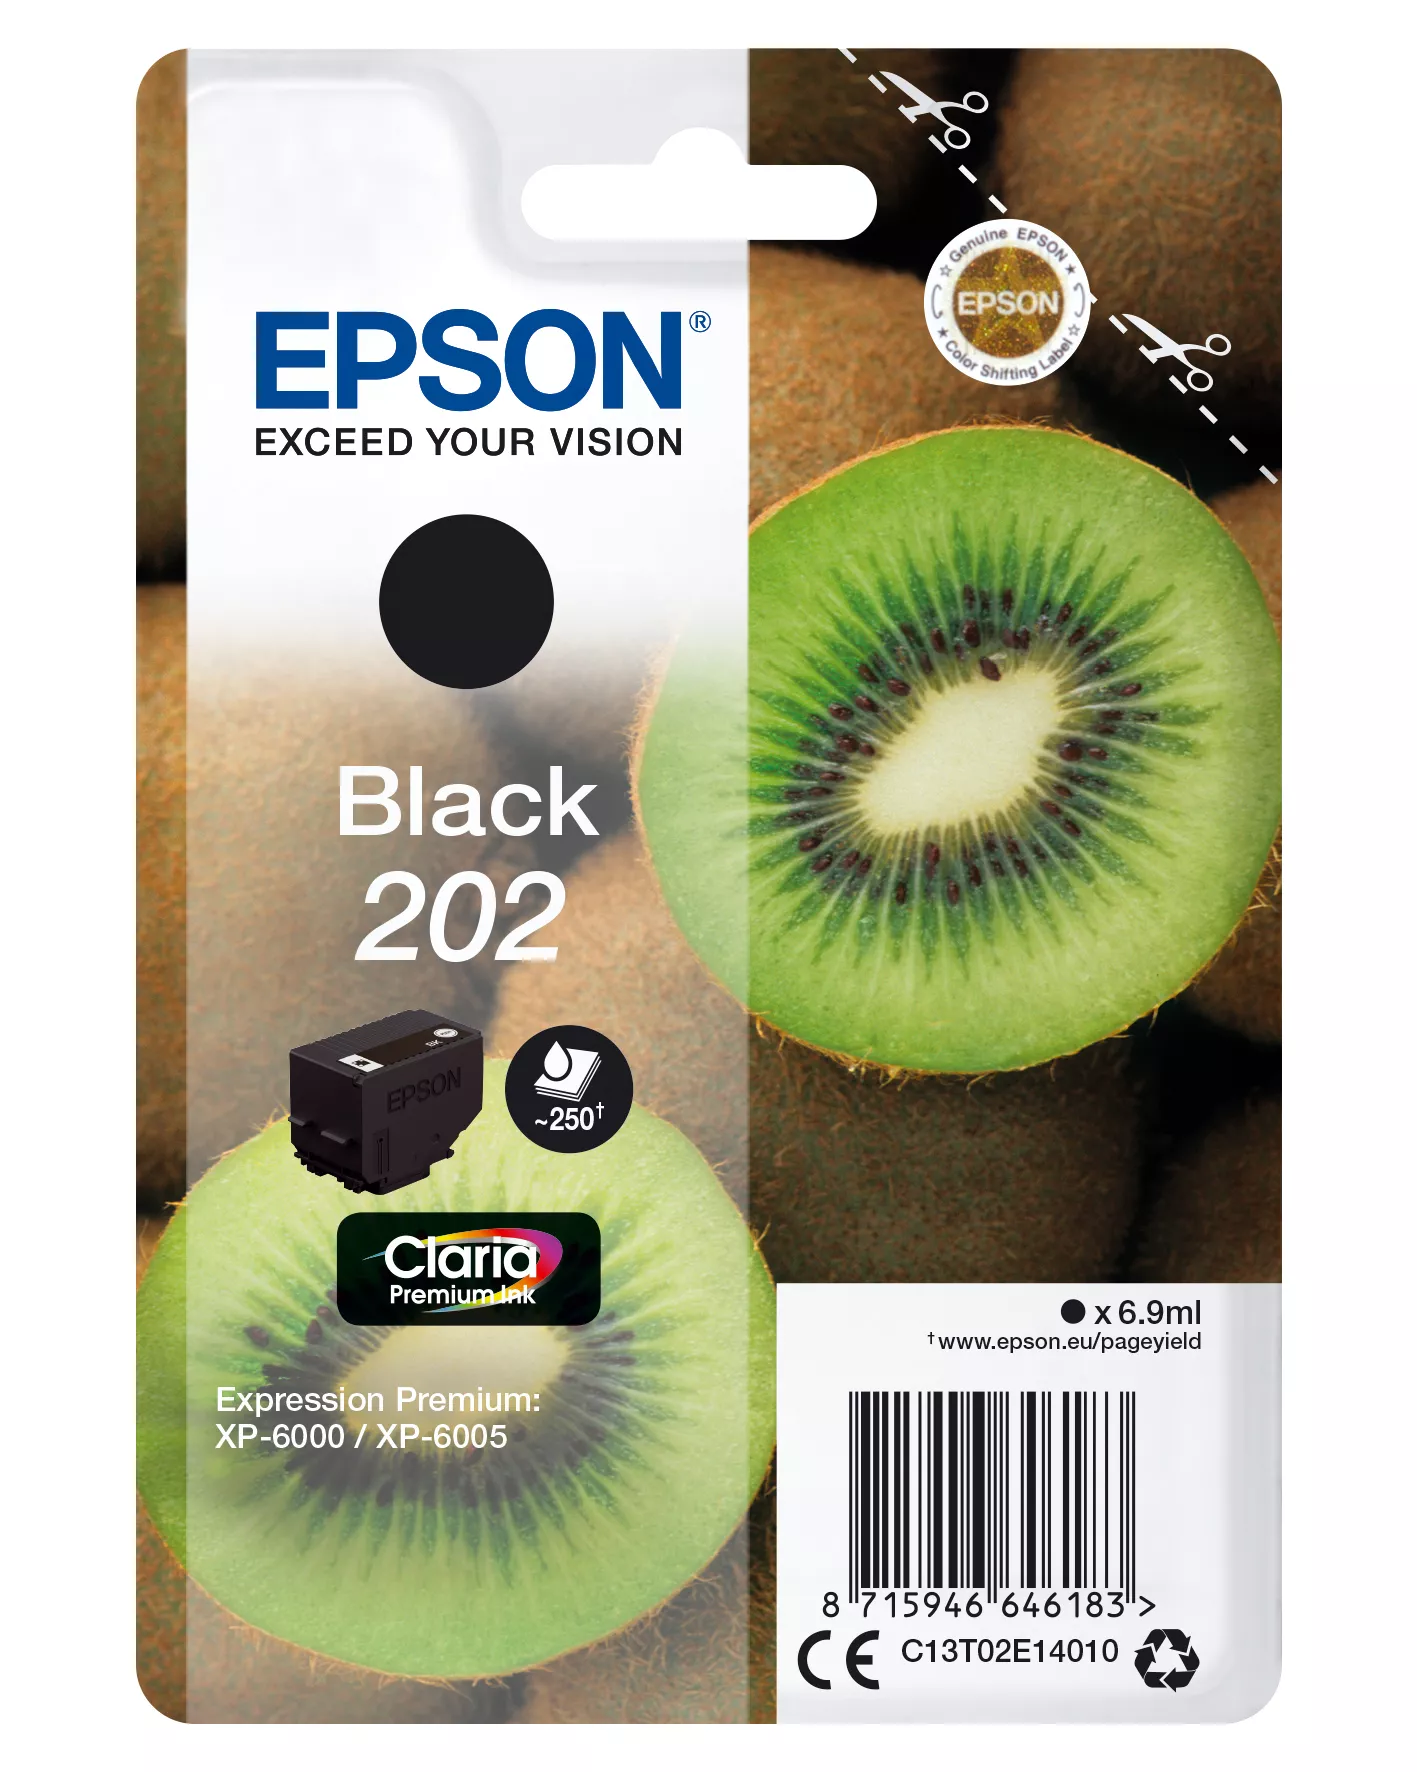 Achat EPSON 202 Black Ink Cartridge sec sur hello RSE